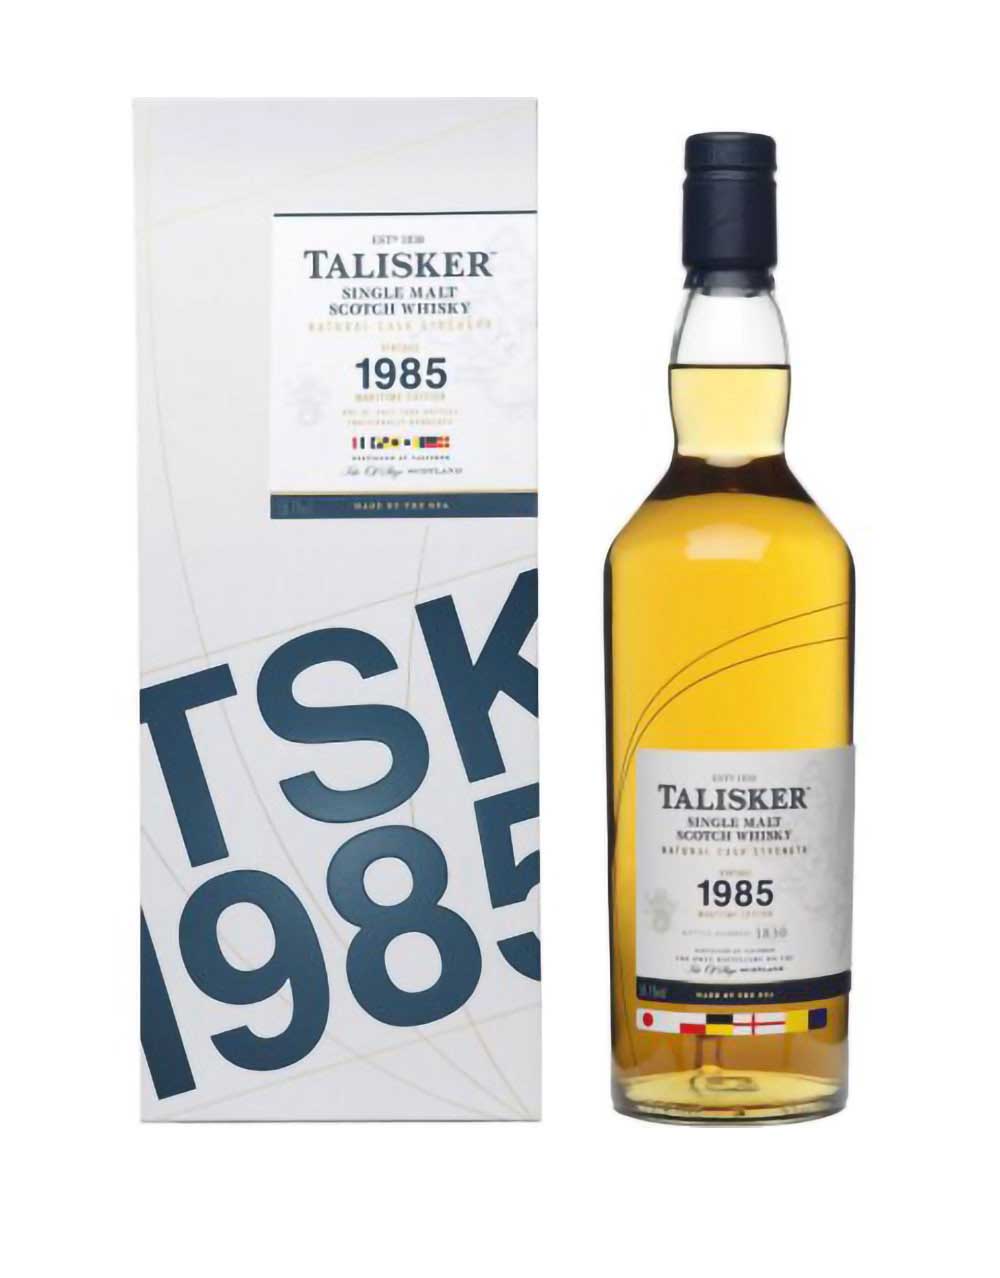 Talisker 1985 Single Malt Scotch Whisky